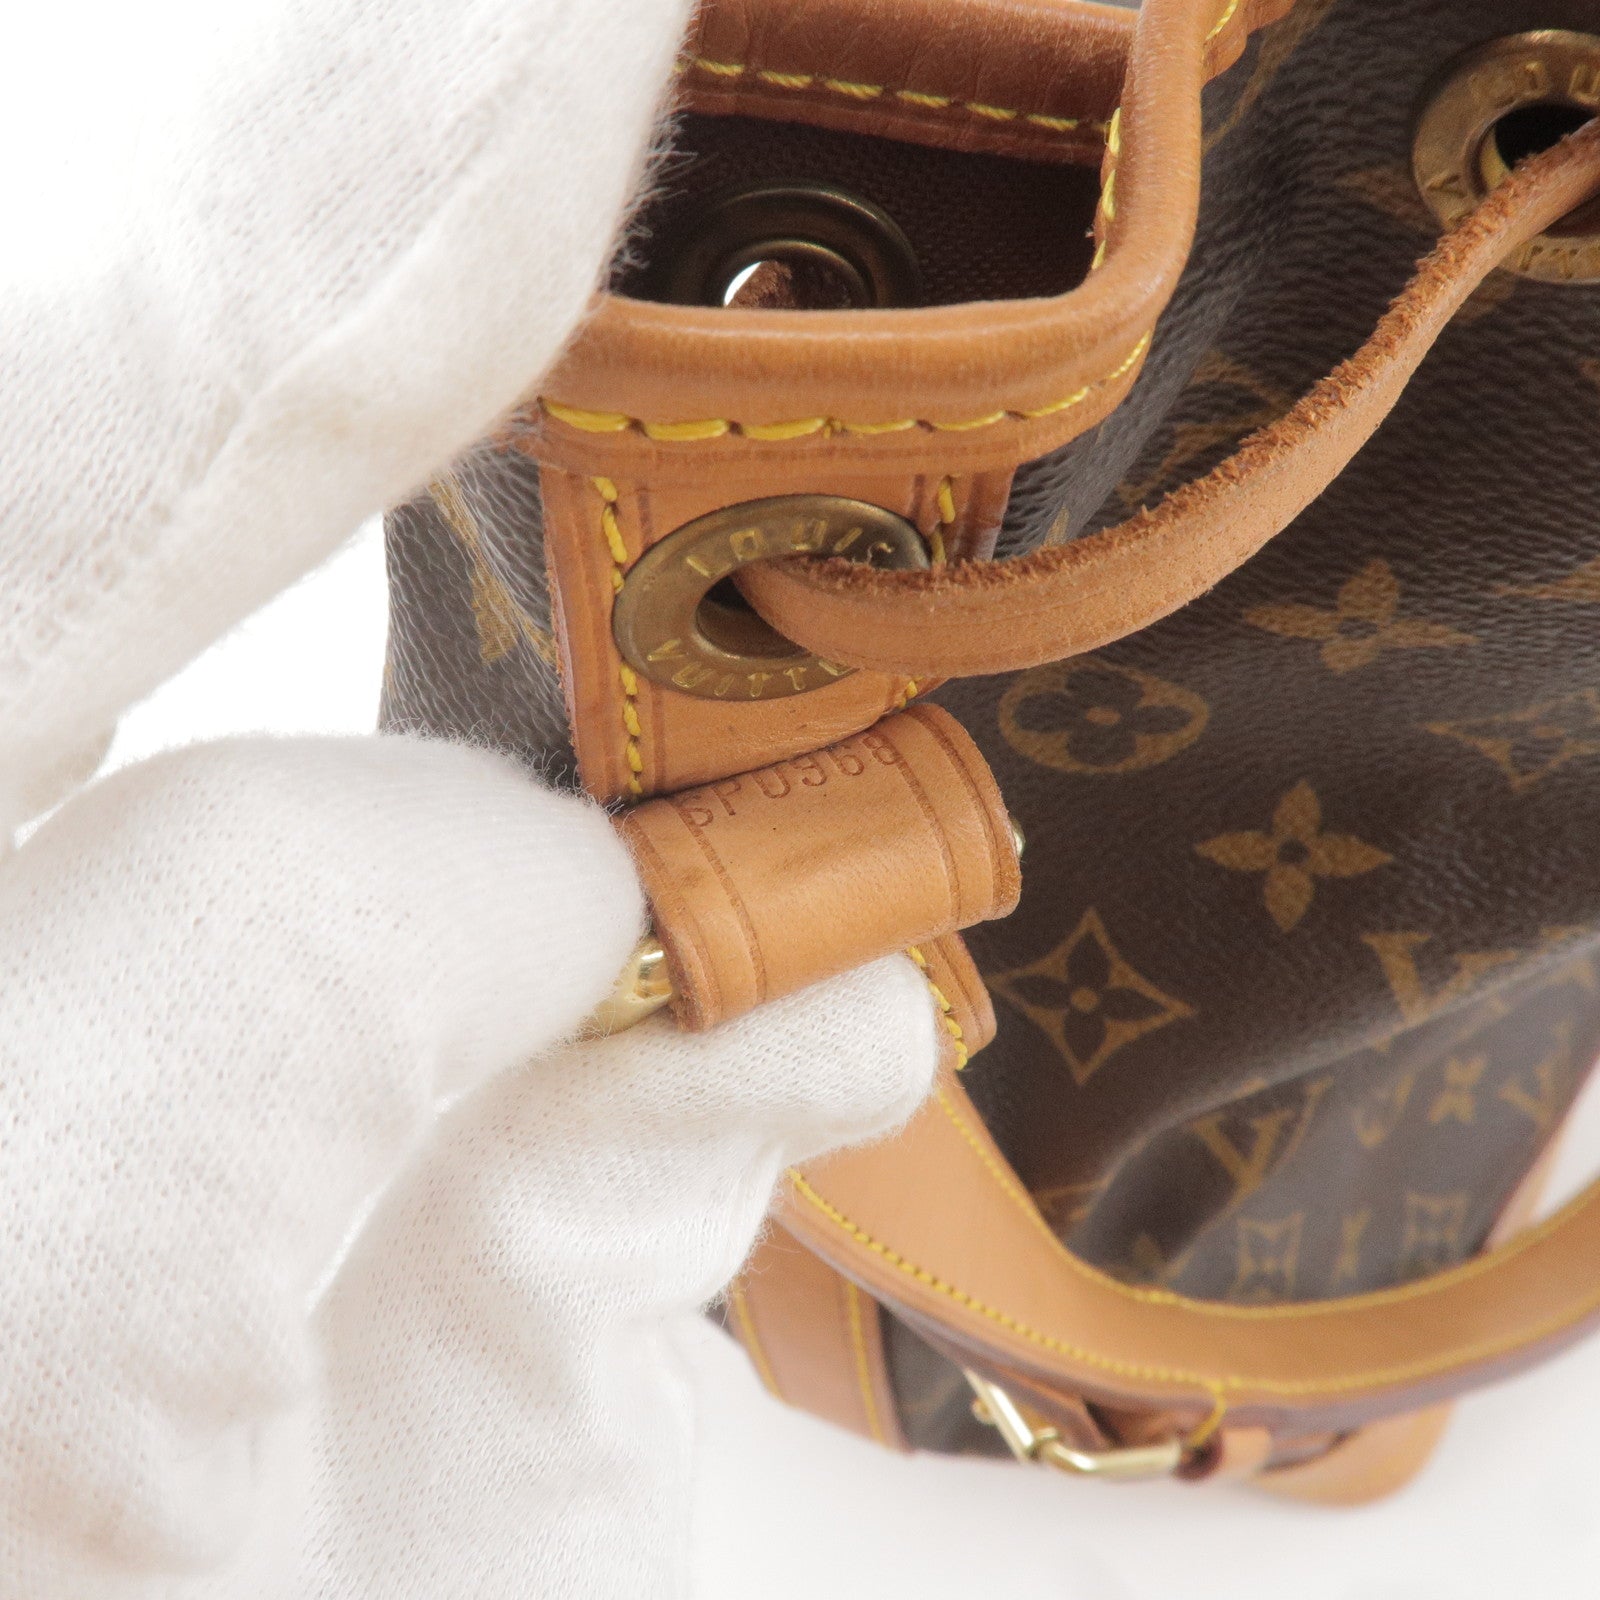 Chanel Jumpsuit, Fendi Bag Bug Shoes, Louis Vuitton Epi Leather